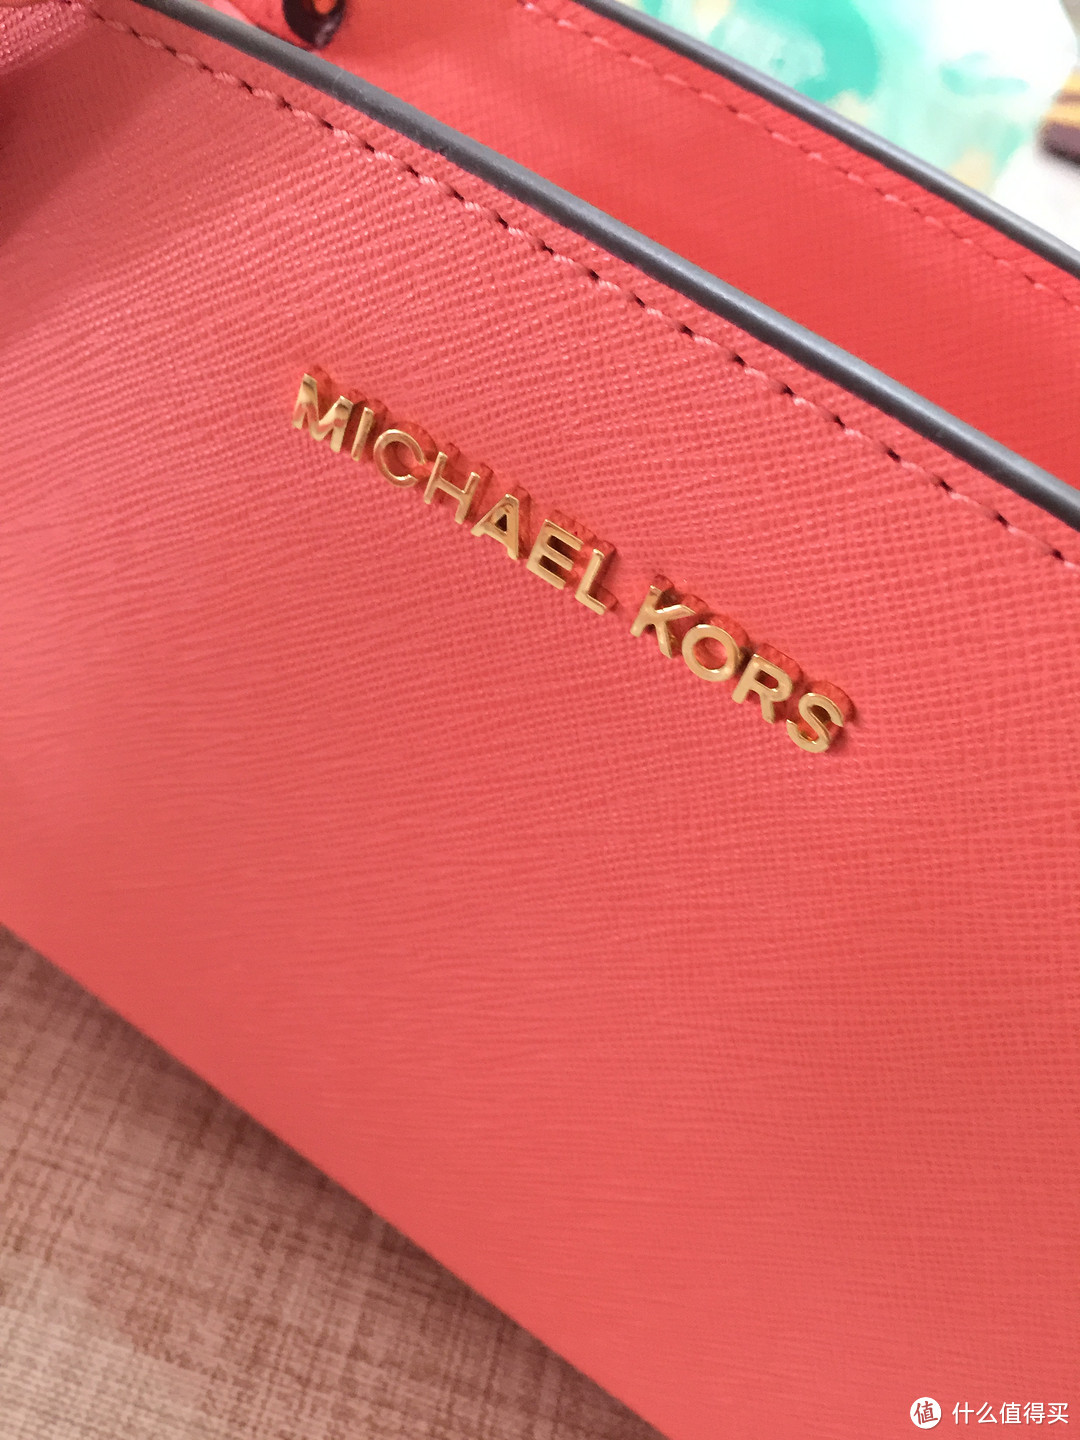 MICHAEL KORS 迈克高仕 女士单肩 斜挎包葡萄柚粉色 简单开箱